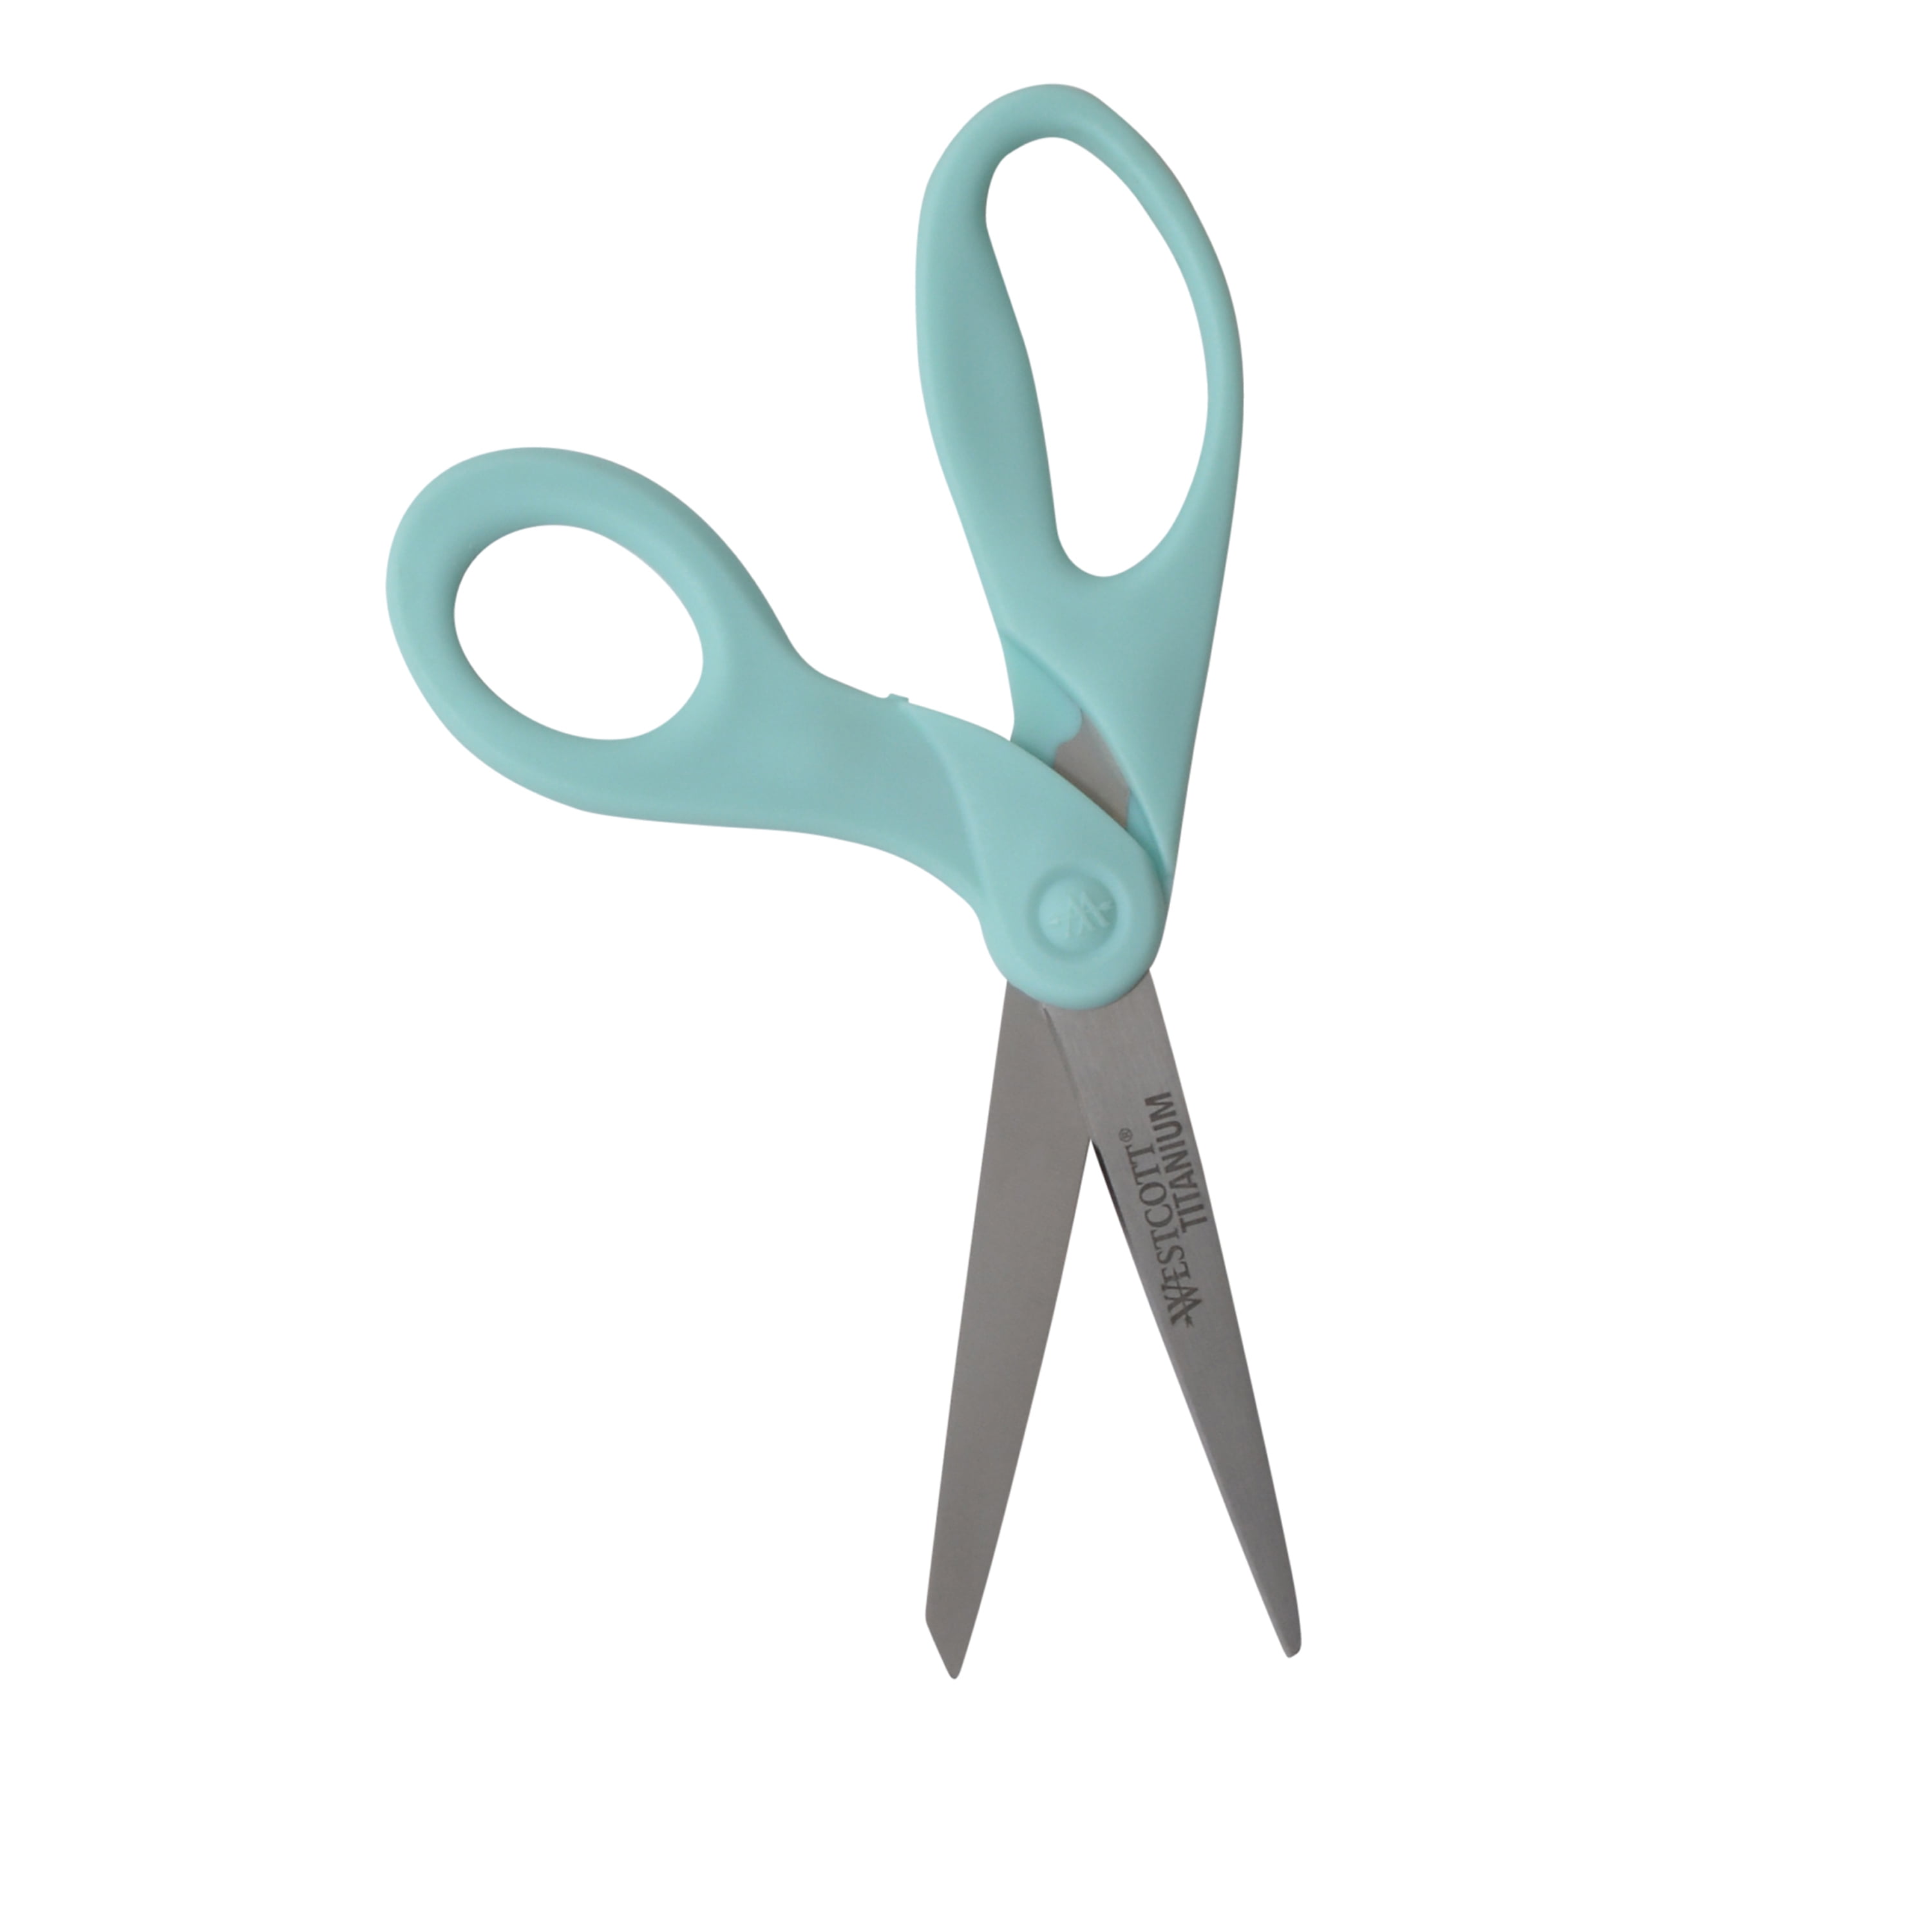 Westcott Sewing Titanium Bonded Fine Cut Scissors – Poshta Design